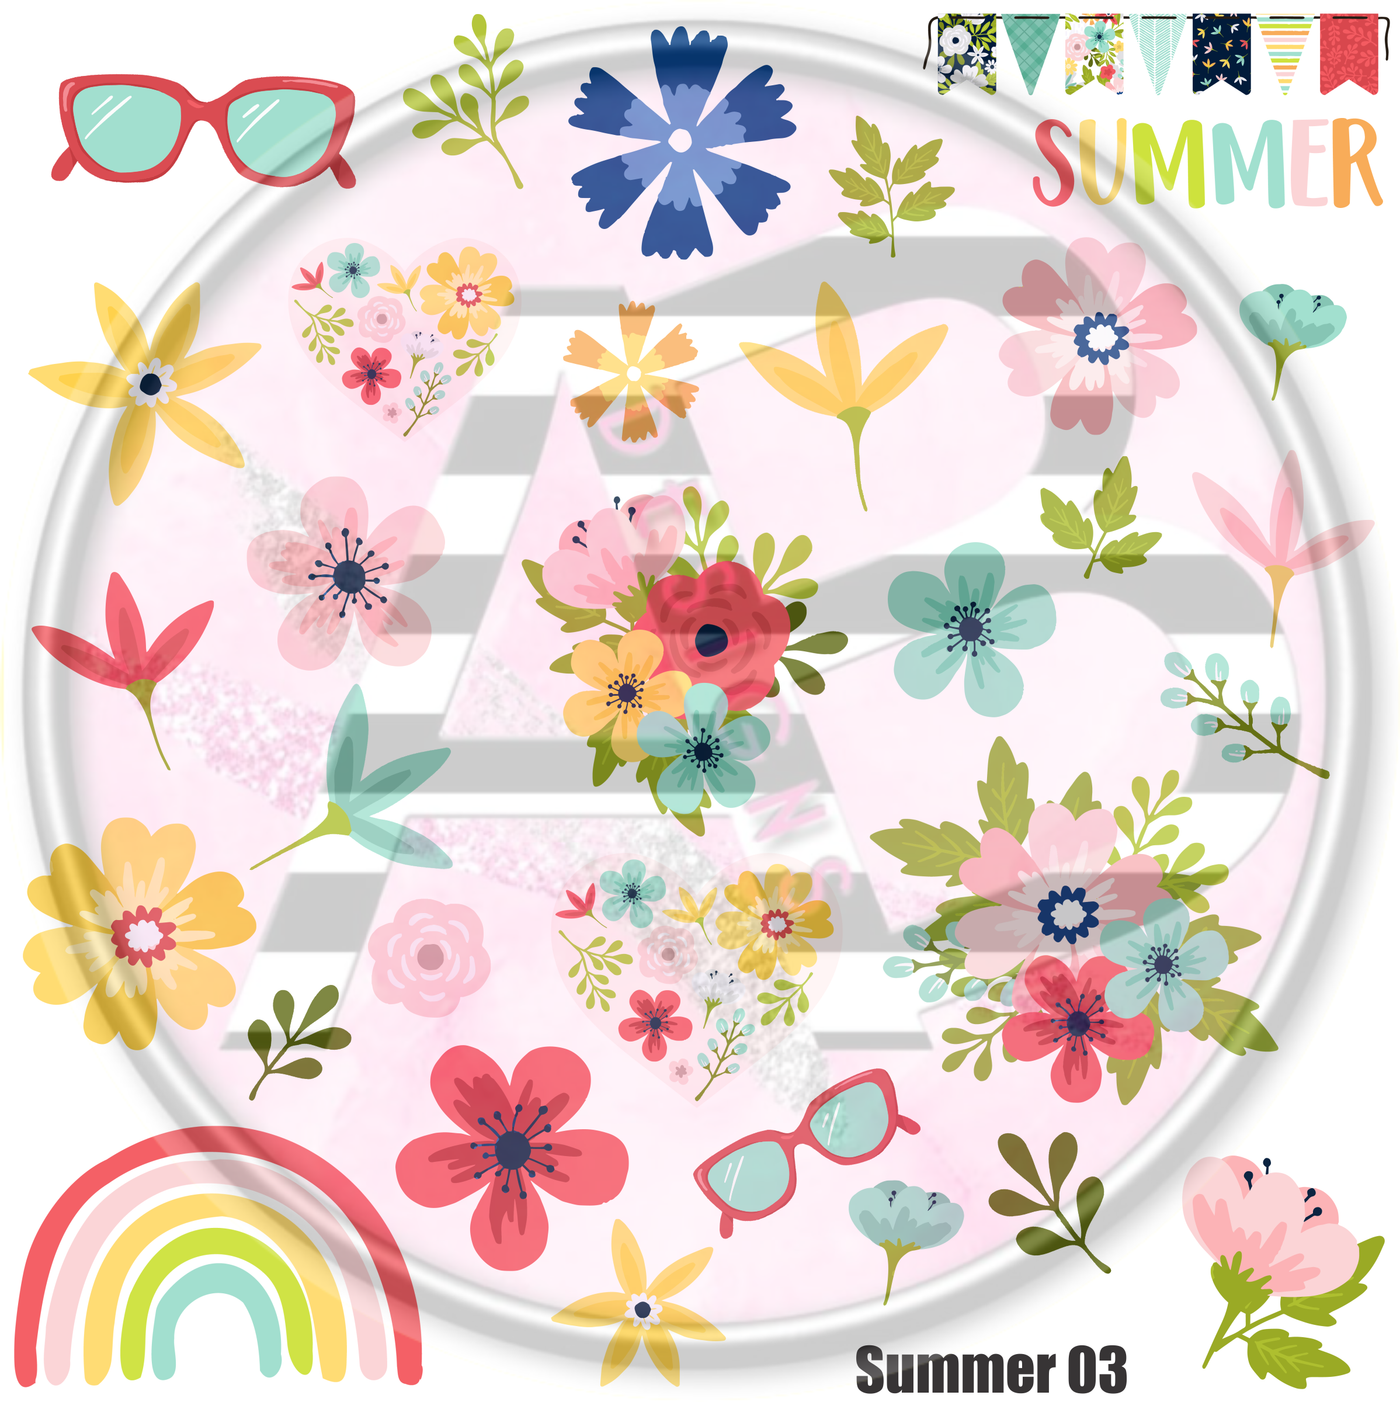 Summer 03 Full Sheet 12x12 - Clear Sheet